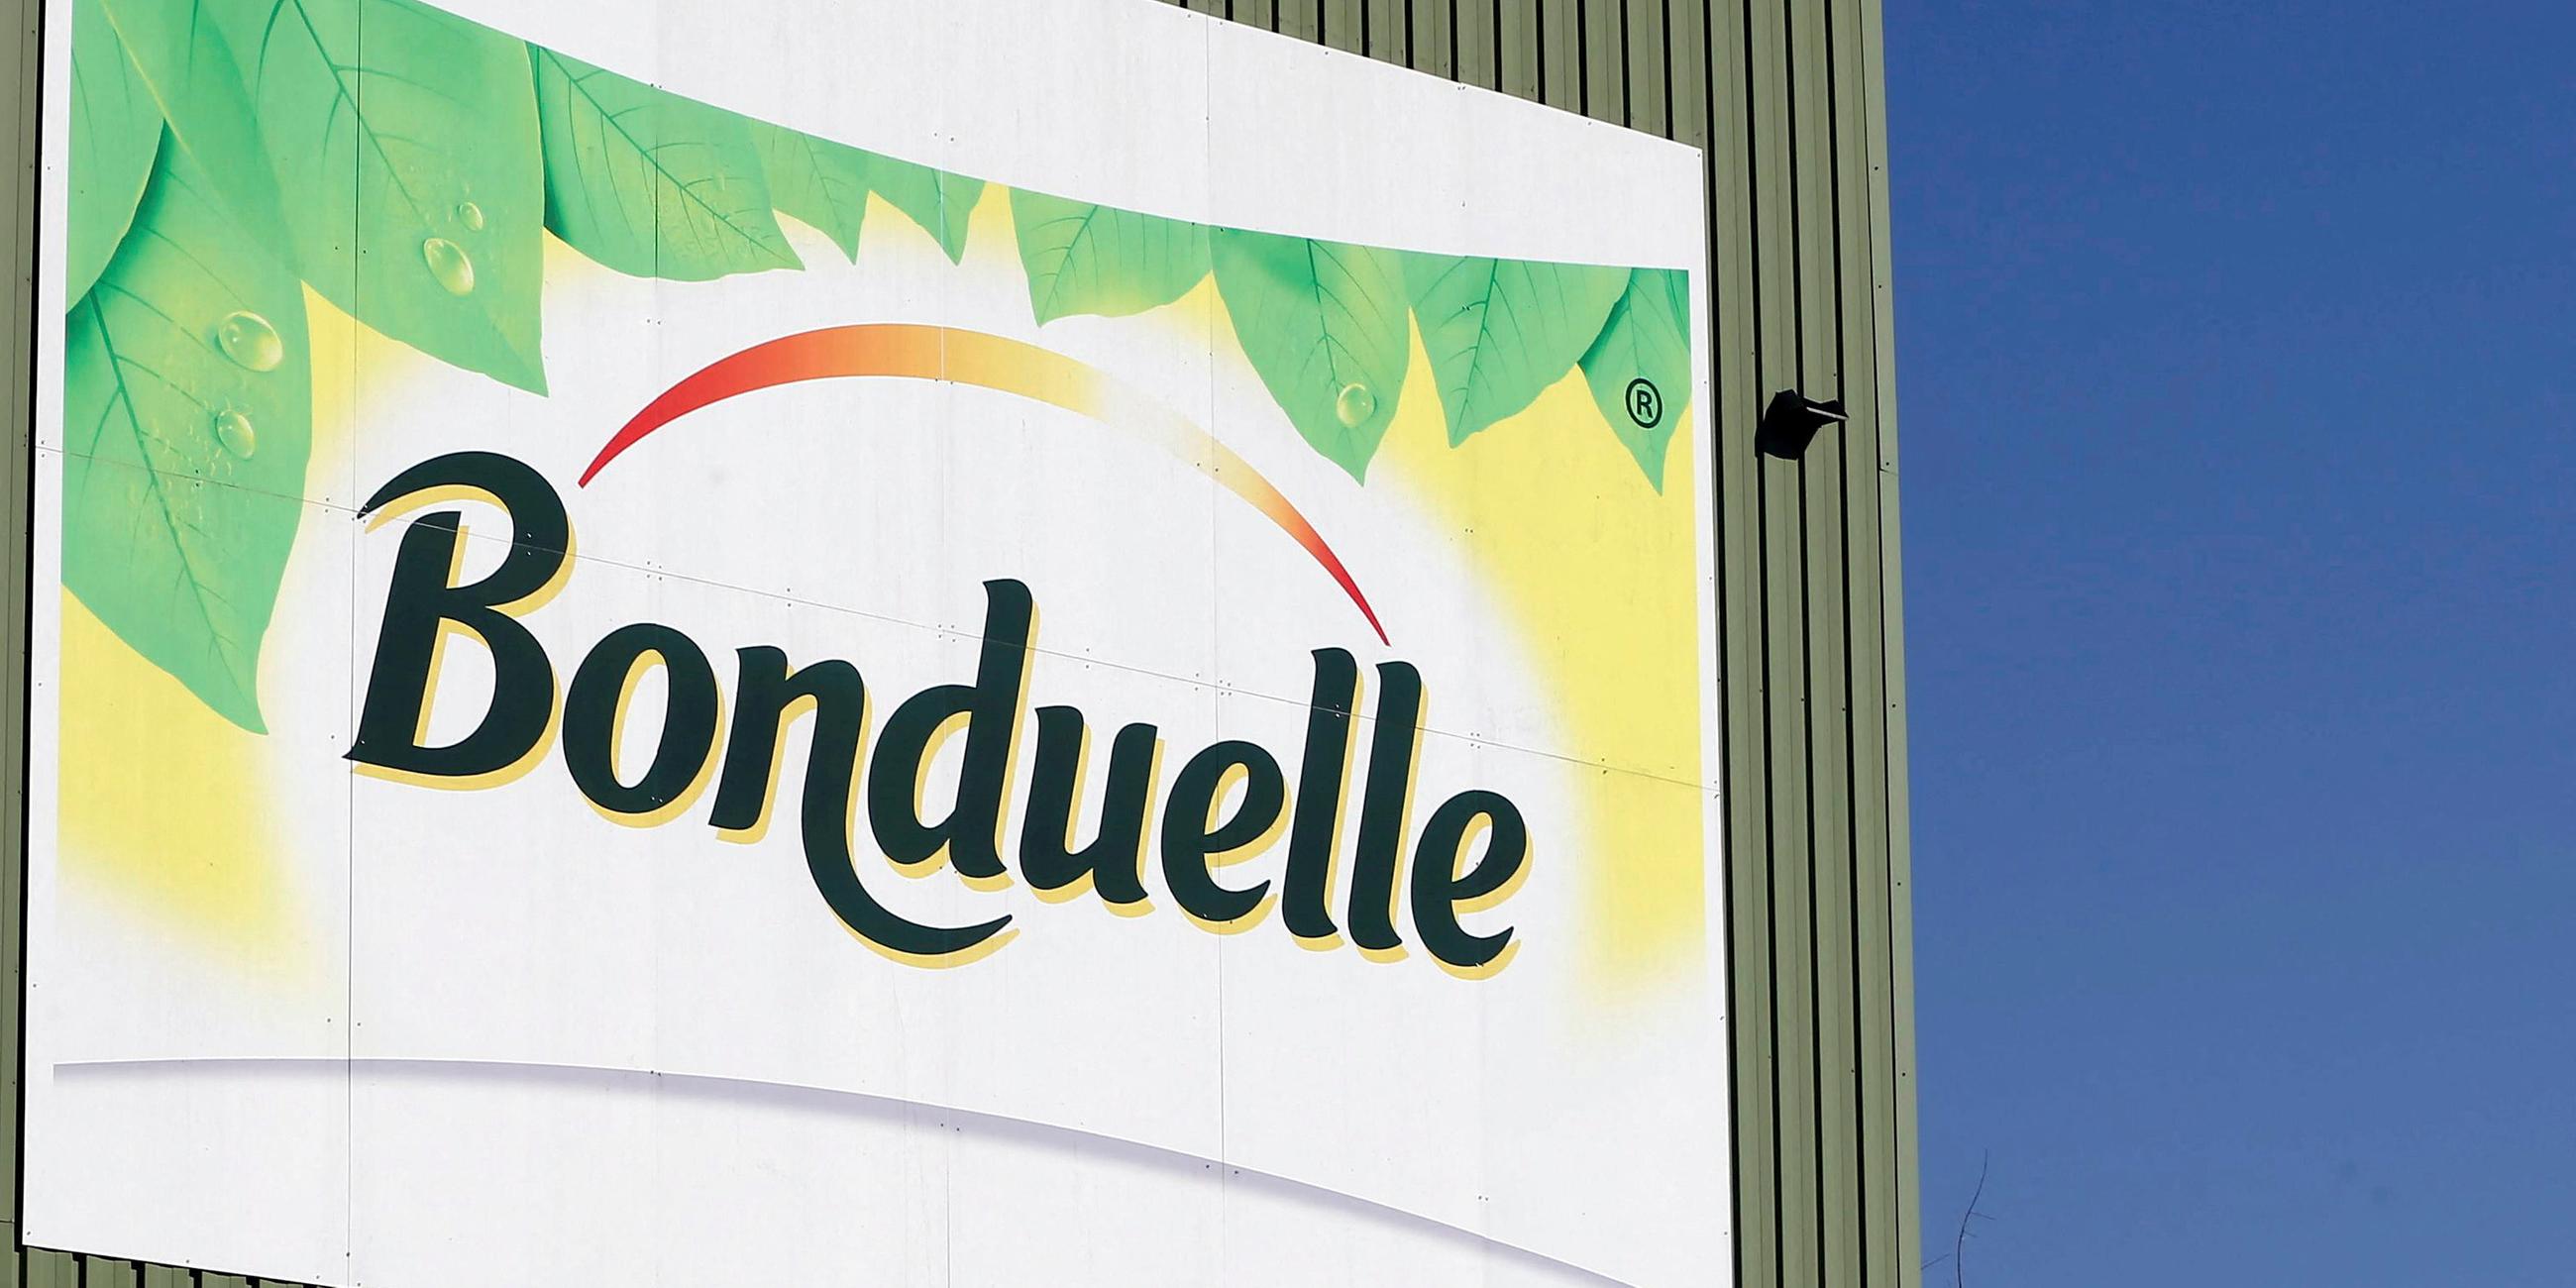 Das Firmen-Logo von Gemüsehersteller Bonduelle, aufgenommen am 03.10.2022